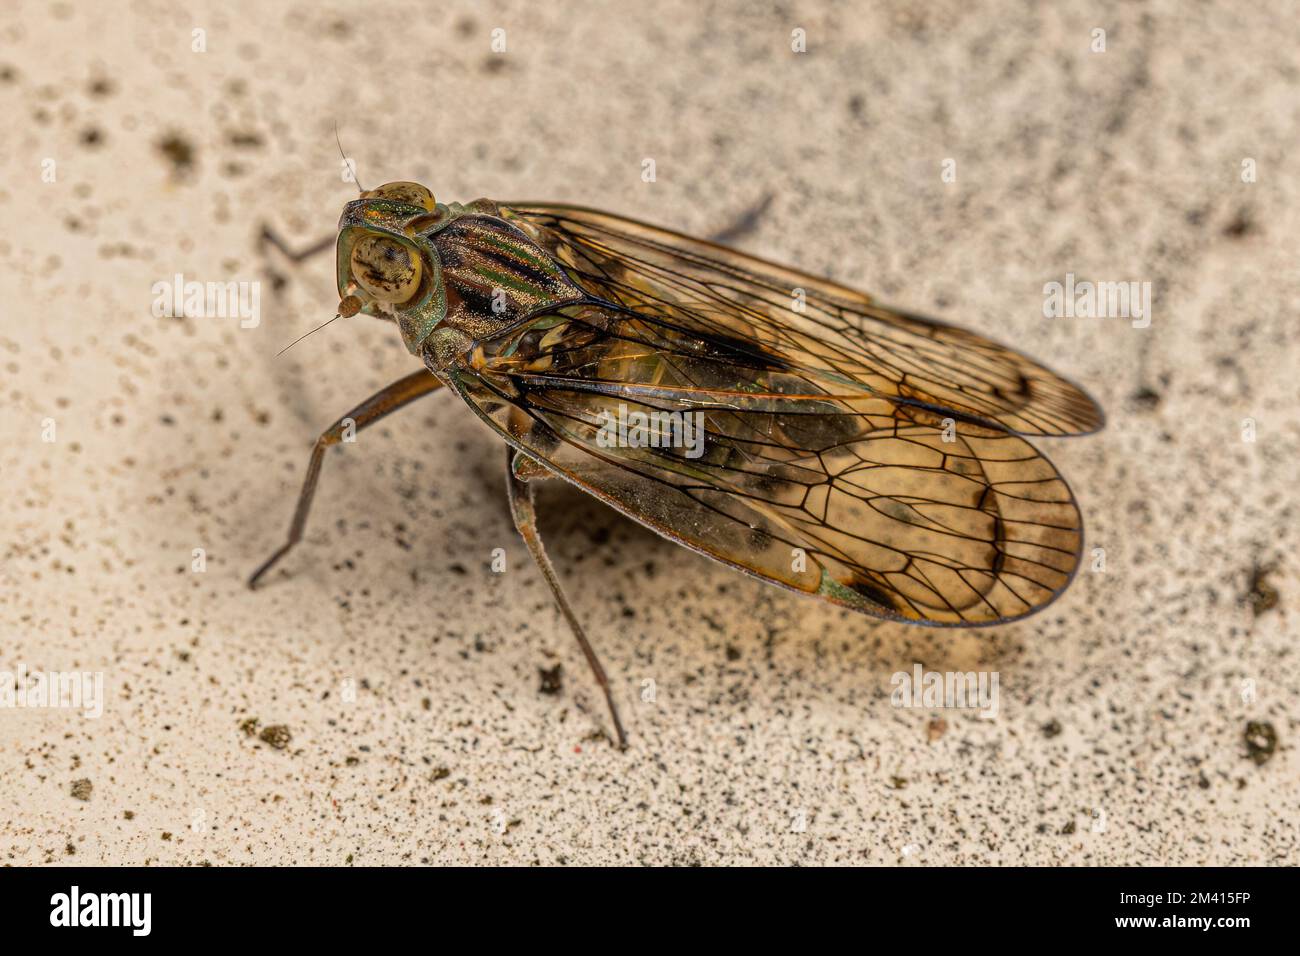 Erwachsener kleiner Planthopper-Insekt des Stammes Pentastirini Stockfoto